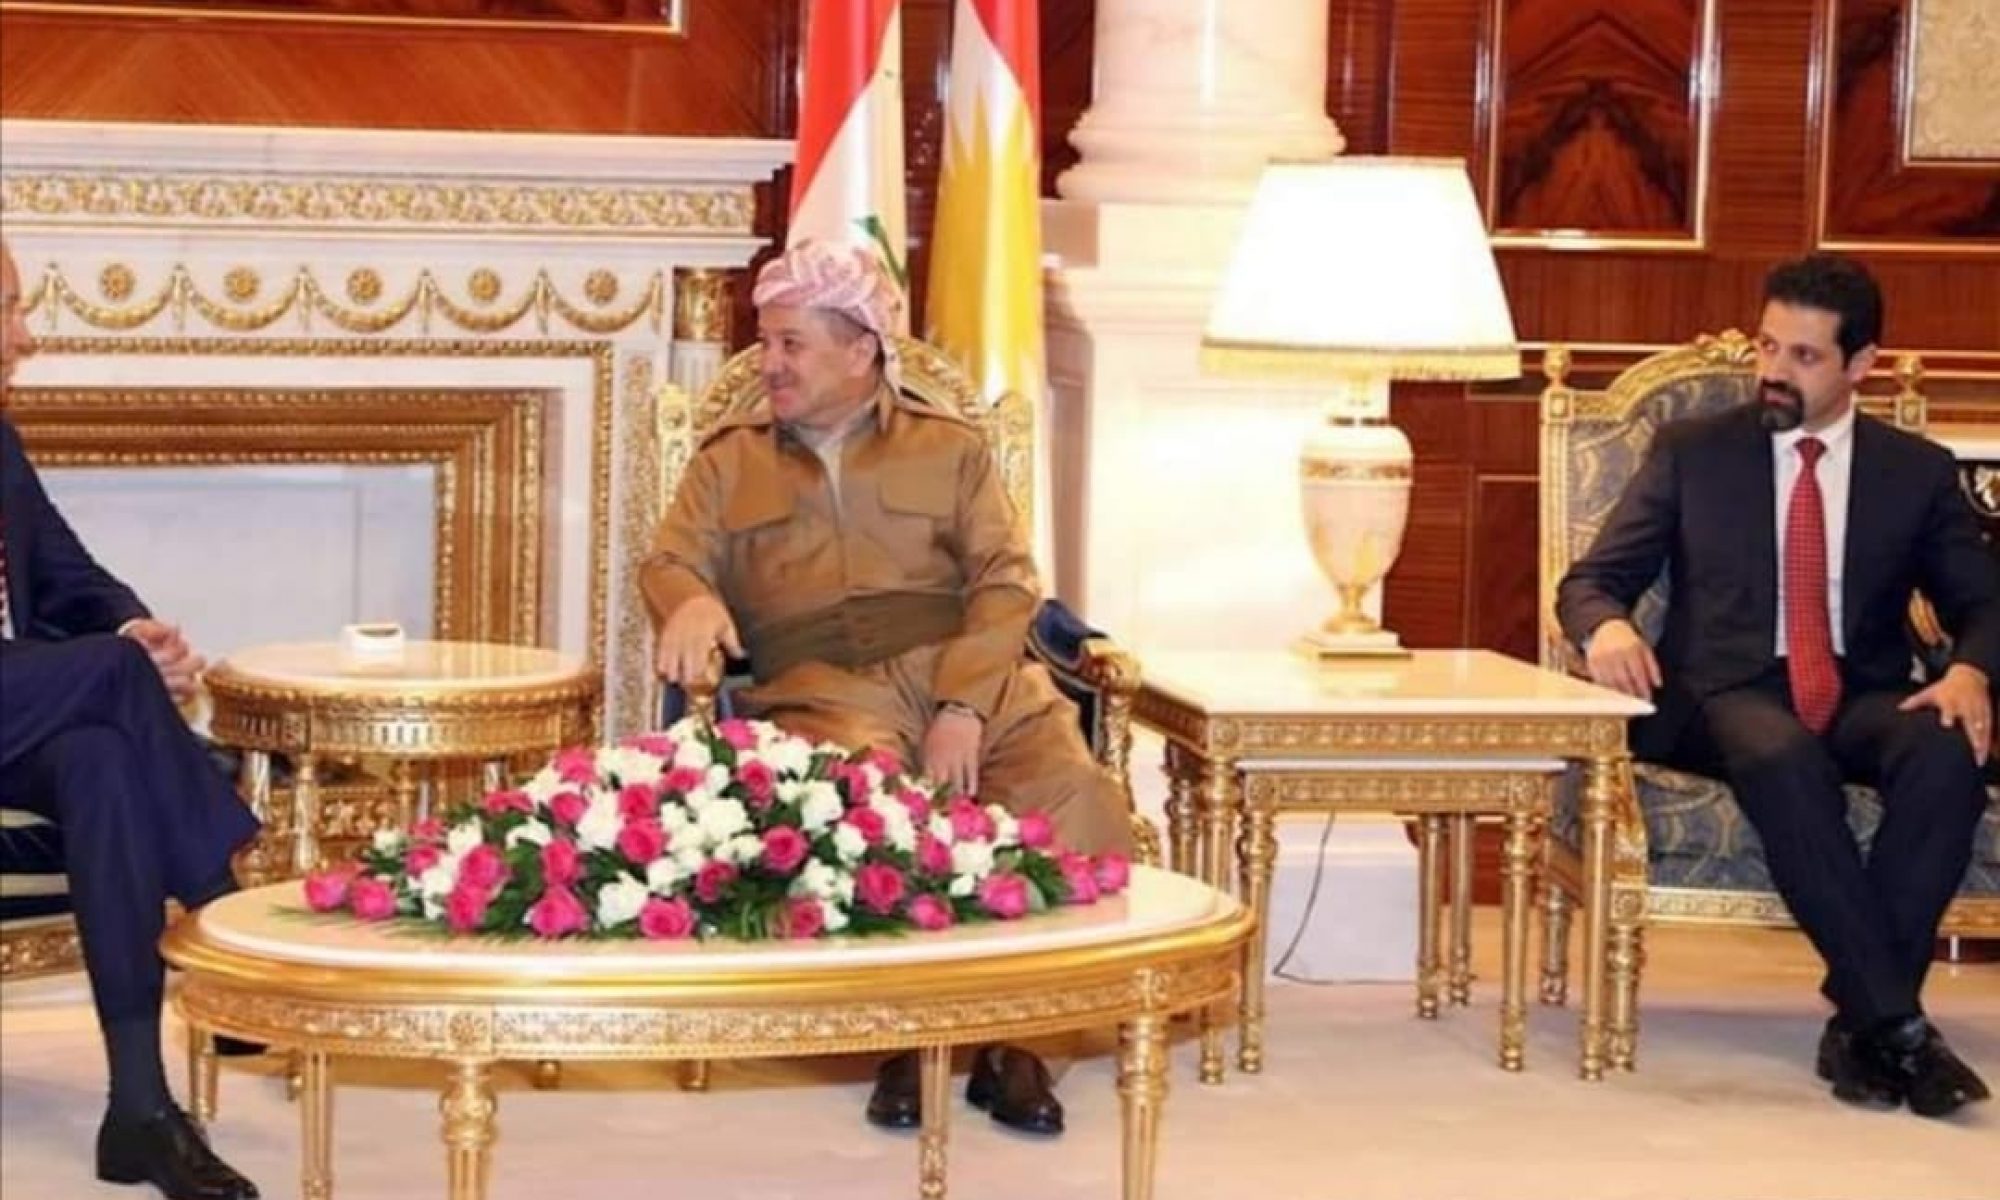 ABD Konsolosluğu, yeni Başkan Joe Biden'a ilişkin ilk haberinde Başkan Mesud Barzani ile olan fotoğrafı paylaştı